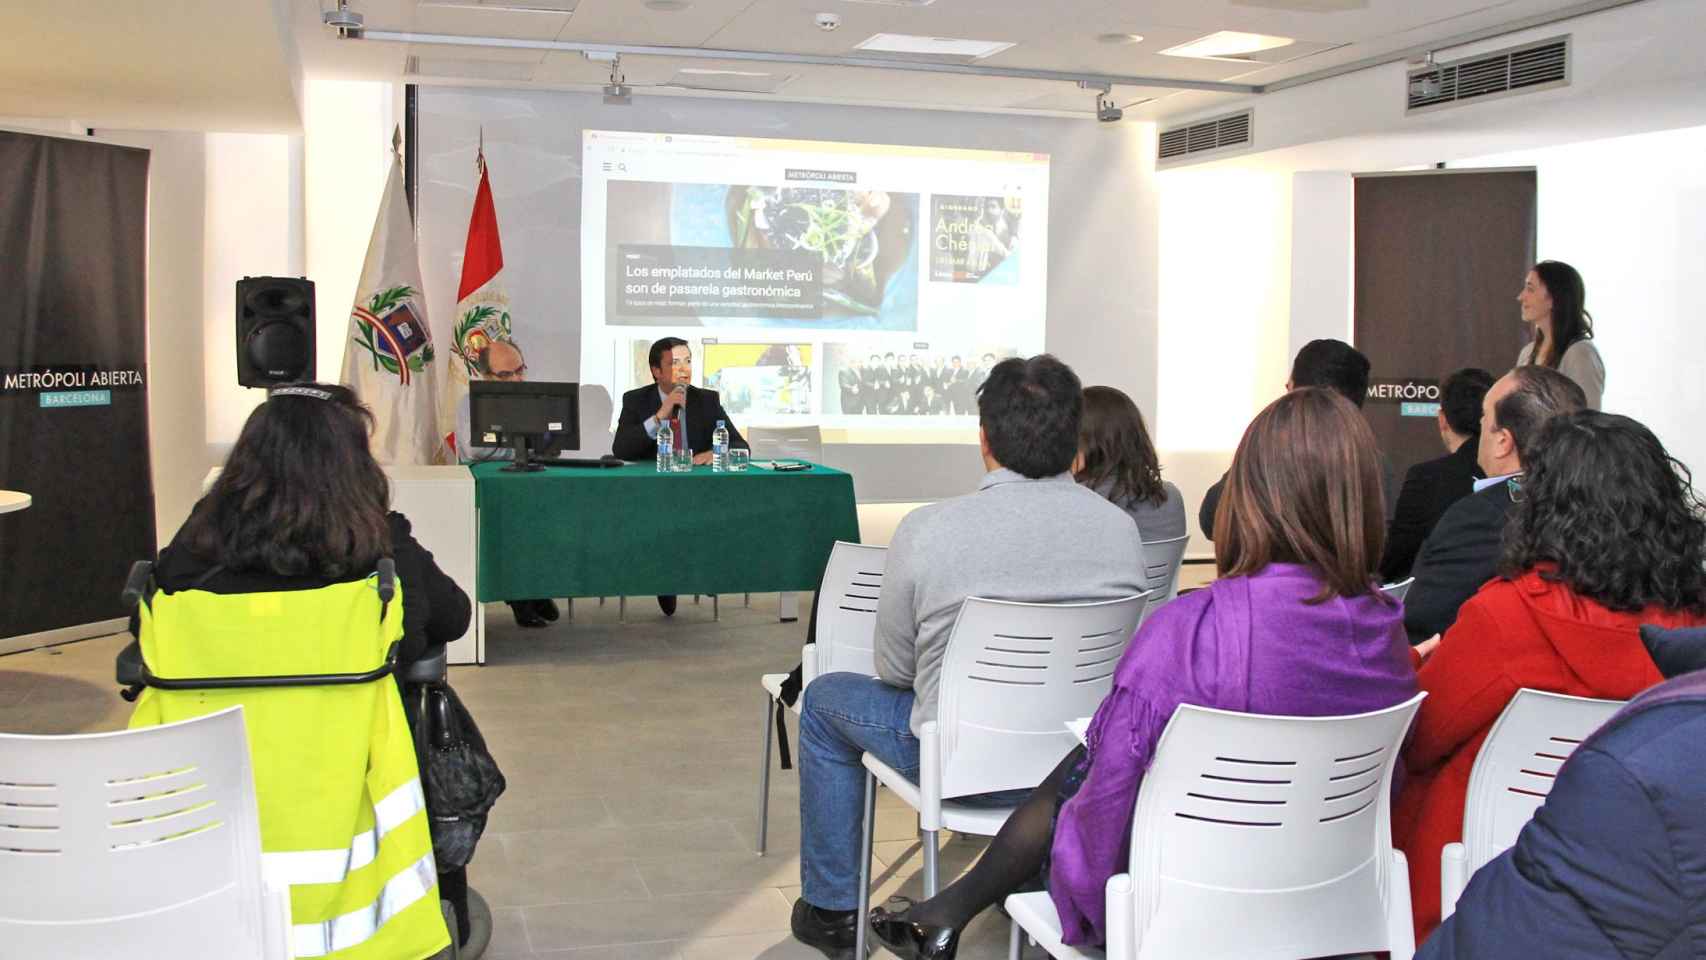 Presentación del portal Perú de Metrópoli Abierta en el Consulado de Perú / HUGO FERNÁNDEZ